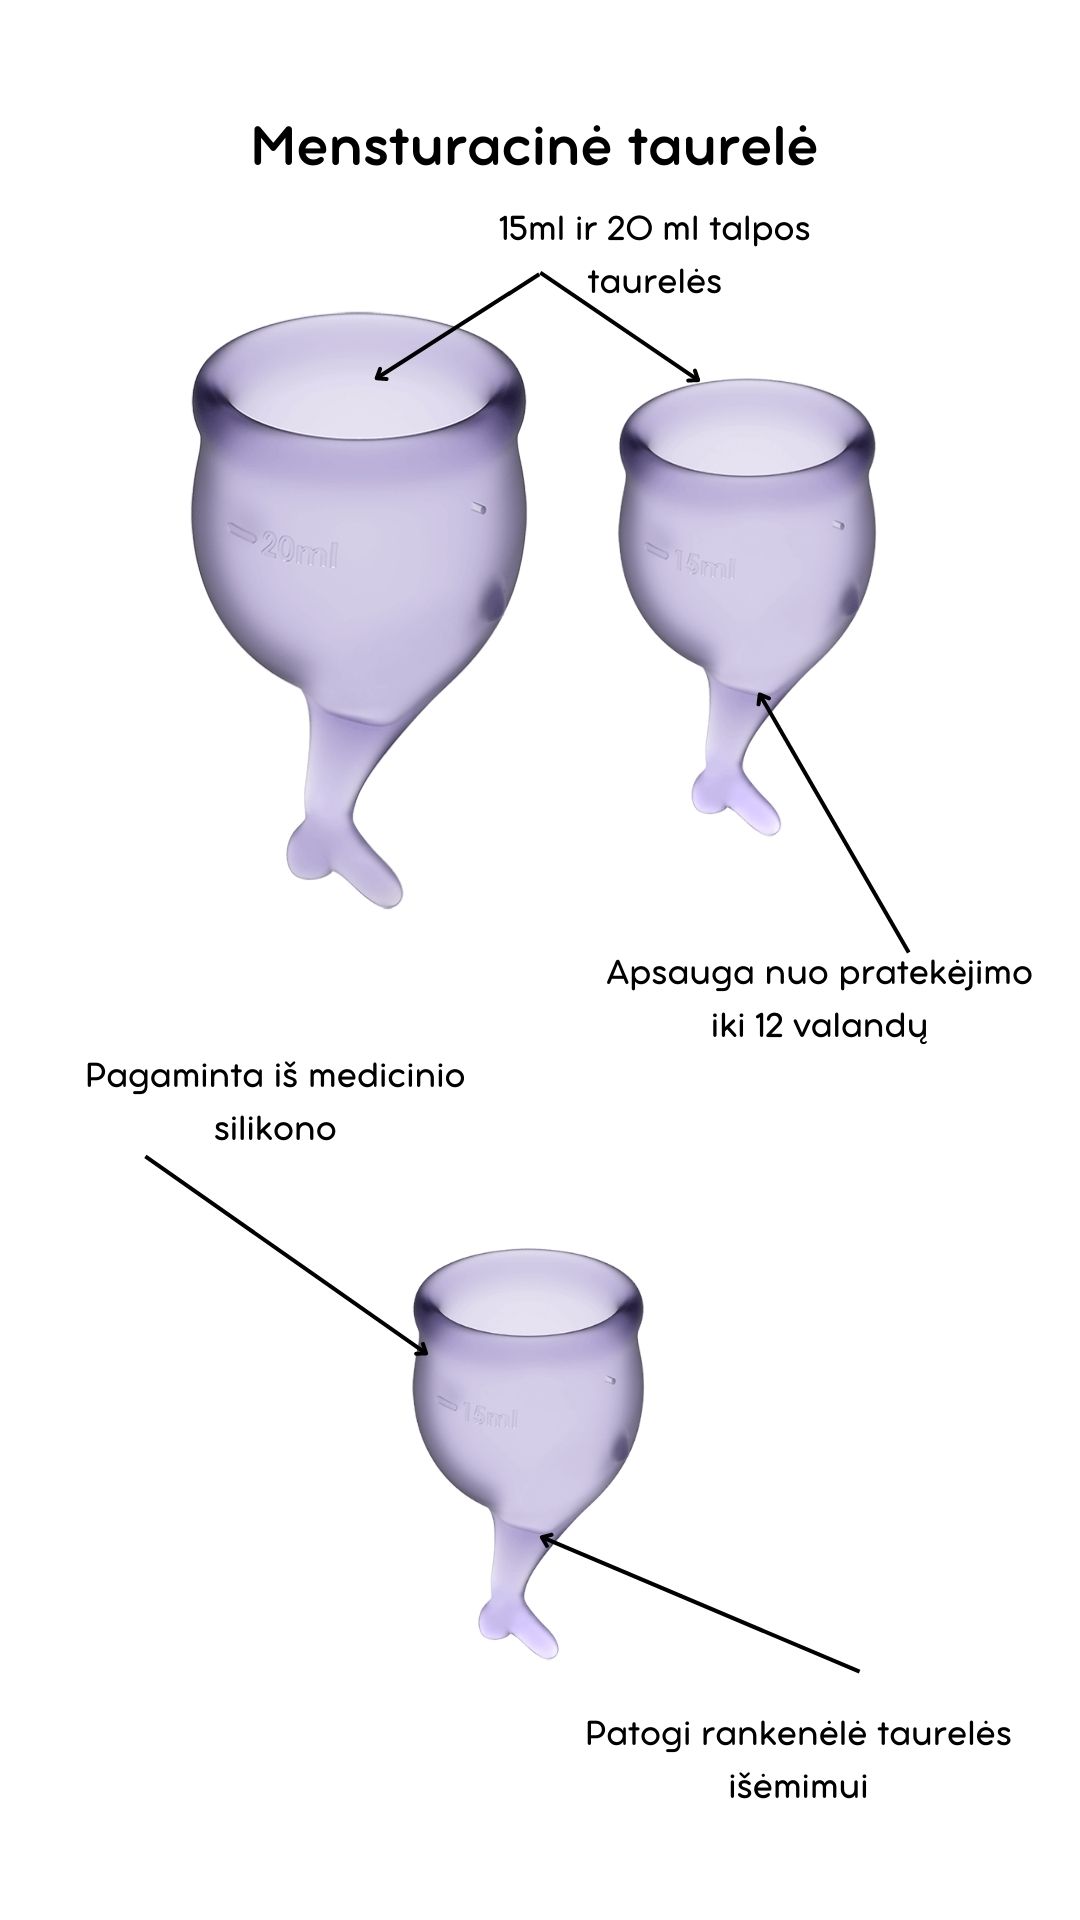 Menstruacinės taurelės Feel Secure - Lilac 
Violetinės spalvos menstruacinės taurelės „Feel Secure“ iš „Satisfyer“ yra puiki, ekologiška ir ekonomiška alternatyva tamponams ar higieniniams įklotams. 
Rinkinyje yra dvi skirtingo tūrio, iš medicininio ir kūnui saugaus silikono pagamintos taurelės, kurias paprasta įsidėti. 
Šios higieniškos, medicininės silikoninės ir lengvai įdedamos menstruacinės taurelės, pasižyminčios žaismingu dizainu, susideda iš dviejų dalių. 15 ml  ir 20 ml talpos, todėl tinka lengvesnėms ir sunkesnėms dienoms. 
Žuvelės formos uodegėlė skirta tam, kad taurelę būtų patogu ištraukti. 
Menstruacijų pradžioje galite rinktis 20 ml talpos taurelę, o pabaigoje – 15 ml. 
  
Kodėl rinktis menstruacinę taurelę? 
Jokio nemalonaus kvapo ir baimės, kad neturite susavimi įklotų! Su menstruacine taurele galite laisvai sportuoti, maudytis, miegoti ar bėgioti. 
Tai yra ekologiška alternatyva, kuri padeda saugoti planetą. 
Sutaupysite! Menstruacinė taurelė gali tarnauti kelis metus, todėl tai yra ekonomiška alternatyva su kuria sutaupysite iki 90% išlaidų, kurias skiriate įklotams ir tamponams. 
Jokio pratekėjimo iki 12 valandų! Menstruacinę taurelę galite įsidėti ryte, o išsiimti ir ištuštinti tik vakare.  
Kas gali naudoti menstruacinę taurelę? 
Daugiau ir mažiau kraujuojančios.  
Gimdžiusios ir negimdžiusios moterys.  
Moterys, neturėjusios lytinių santykių.  
Ar taurelė nepratekės? 
Tam, kad menstruacinė taurelė nepratekėtų, ji turi tinkamai išsiskleisti viduje. Tam, kad įsitikintumėte, jog taurelė tinkamai atsidarė, galite su pirštu perbraukti per kraštelį ir patikrinti, ar nesusiformavo raukšlės. Jei taurelė teisingai atsidarė, bus susidaręs vakuumas.  
Taurelė gali pratekėti, jei mėnesinės yra itin gausios, kad to nenutiktų – turite stebėti mėnesinių gausą ir rekomenduojama dažniau ištuštinti taurelę, kol suprasite kas kiek valandų jums reikia ją tuštinti ir atrasite tavo ritmą.  
Kaip ištuštinti taurelę? 
Taurelę rekomenduojama ištuštinti kas 12 valandų ar dažniau, jei kraujuojate gausiau. Ištuštinus taurelę ją nuplaukite po tekančiu vandeniu ir dezinfekuokite.  
Kaip įsidėti menstruacinę taurelę? 
Prieš naudojant menstruacinę taurelę, ją reikia pavirti 3-5 minutes vandenyje.  
Nusiplaukite rankas ir atsisėdusi ant unitazo praskėskite kojas. 
Spustelkite rodomuoju pirštu per vienos taurelės briaunos vidurį (taurelė bus U formos).  
Lengvai stumiant, įdėkite taurelę į makštį. 
Kaip išimti menstruacinę taurelę? 
Taurelę išsitraukti galite timptelėjusios už jos uodegėlės, o kraują išpilkite į unitazą. Taurelę praplaukite ir galite ją naudoti vėl. Pasibaigus mėnesinėms, taurelę pavirkite vandenyje.  
Šlapinantis ar tuštinantis taurelės išsiimti nereikia